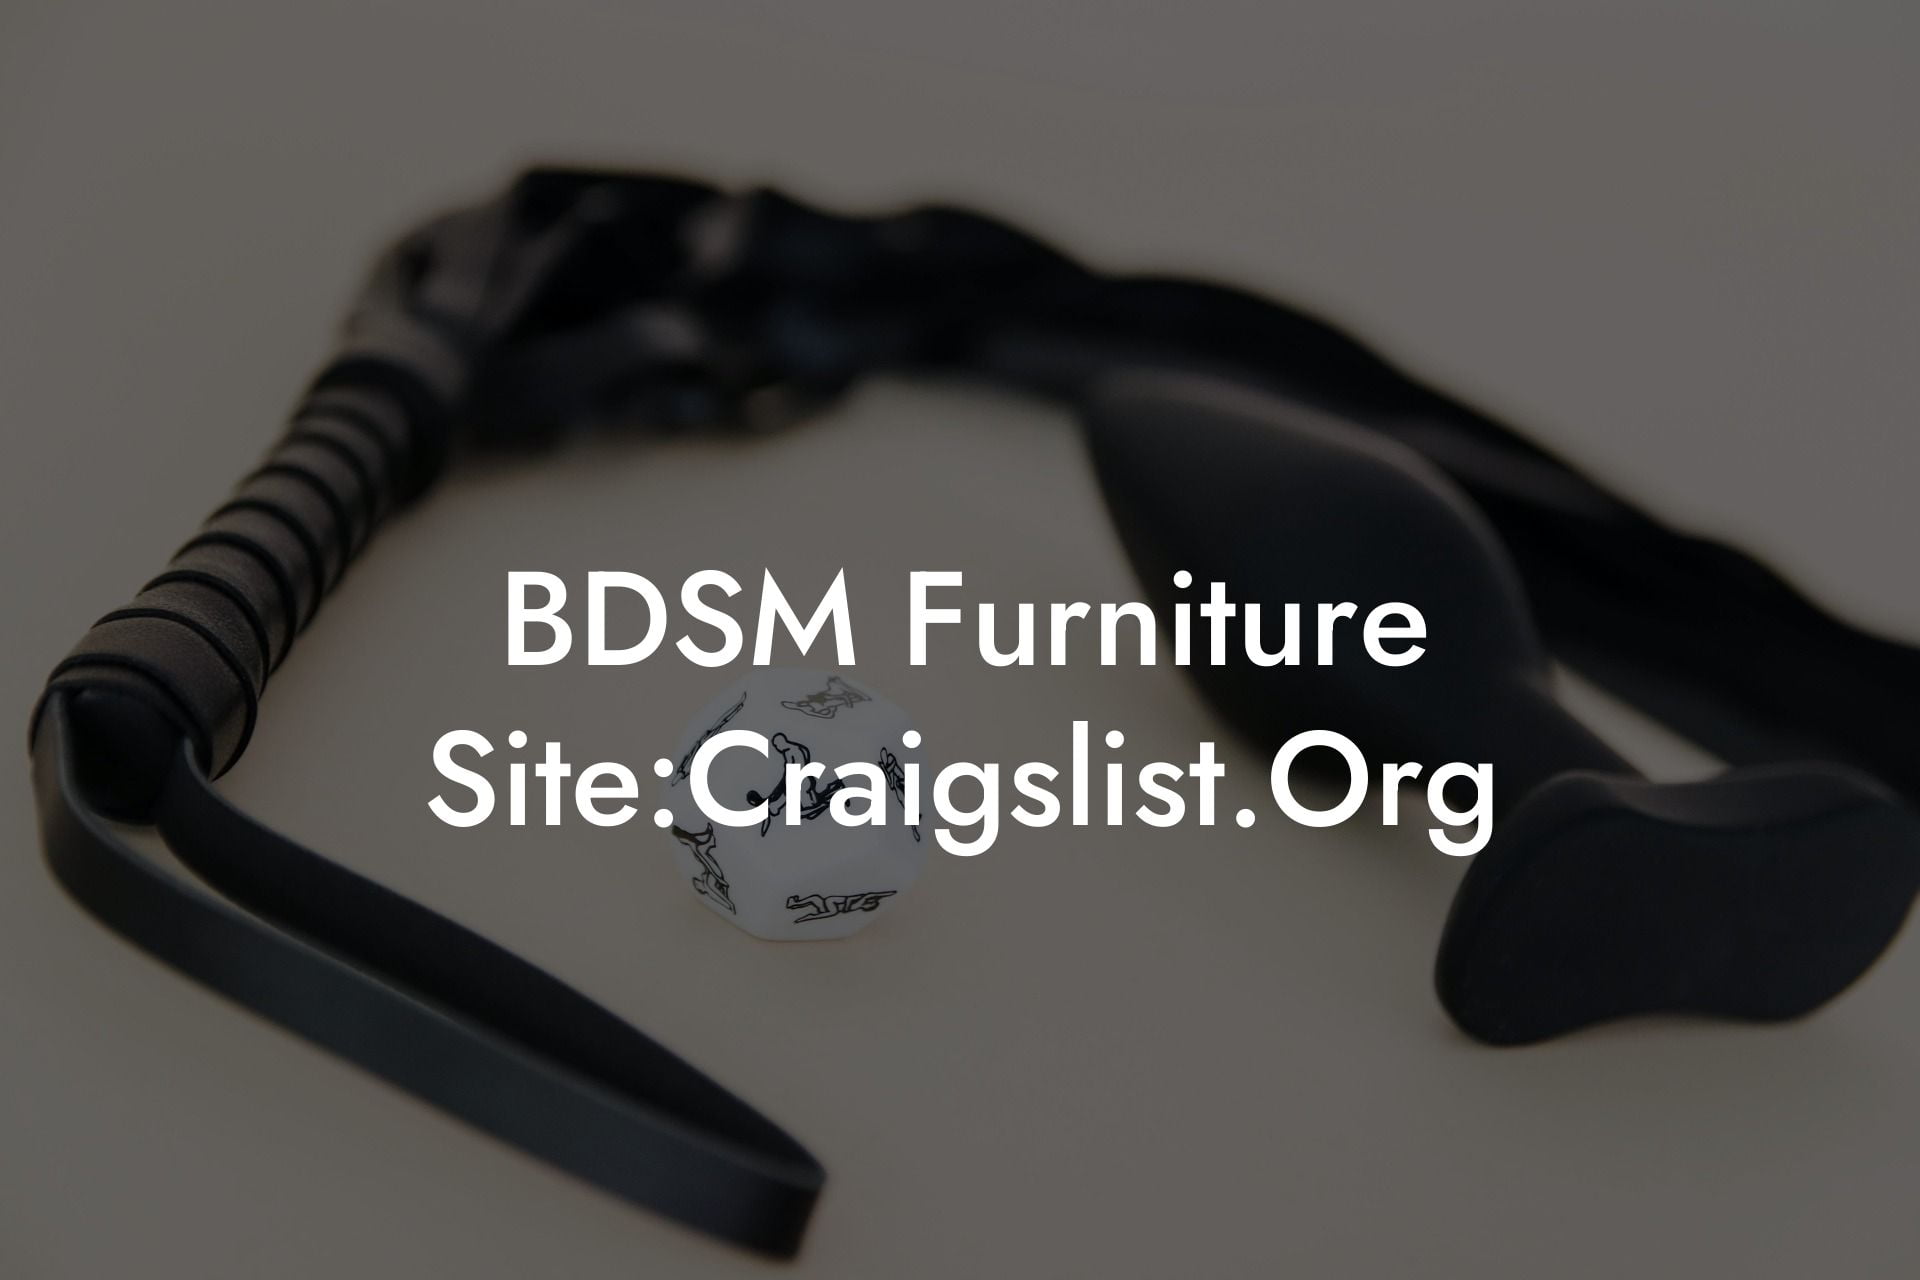 BDSM Furniture Site:Craigslist.Org